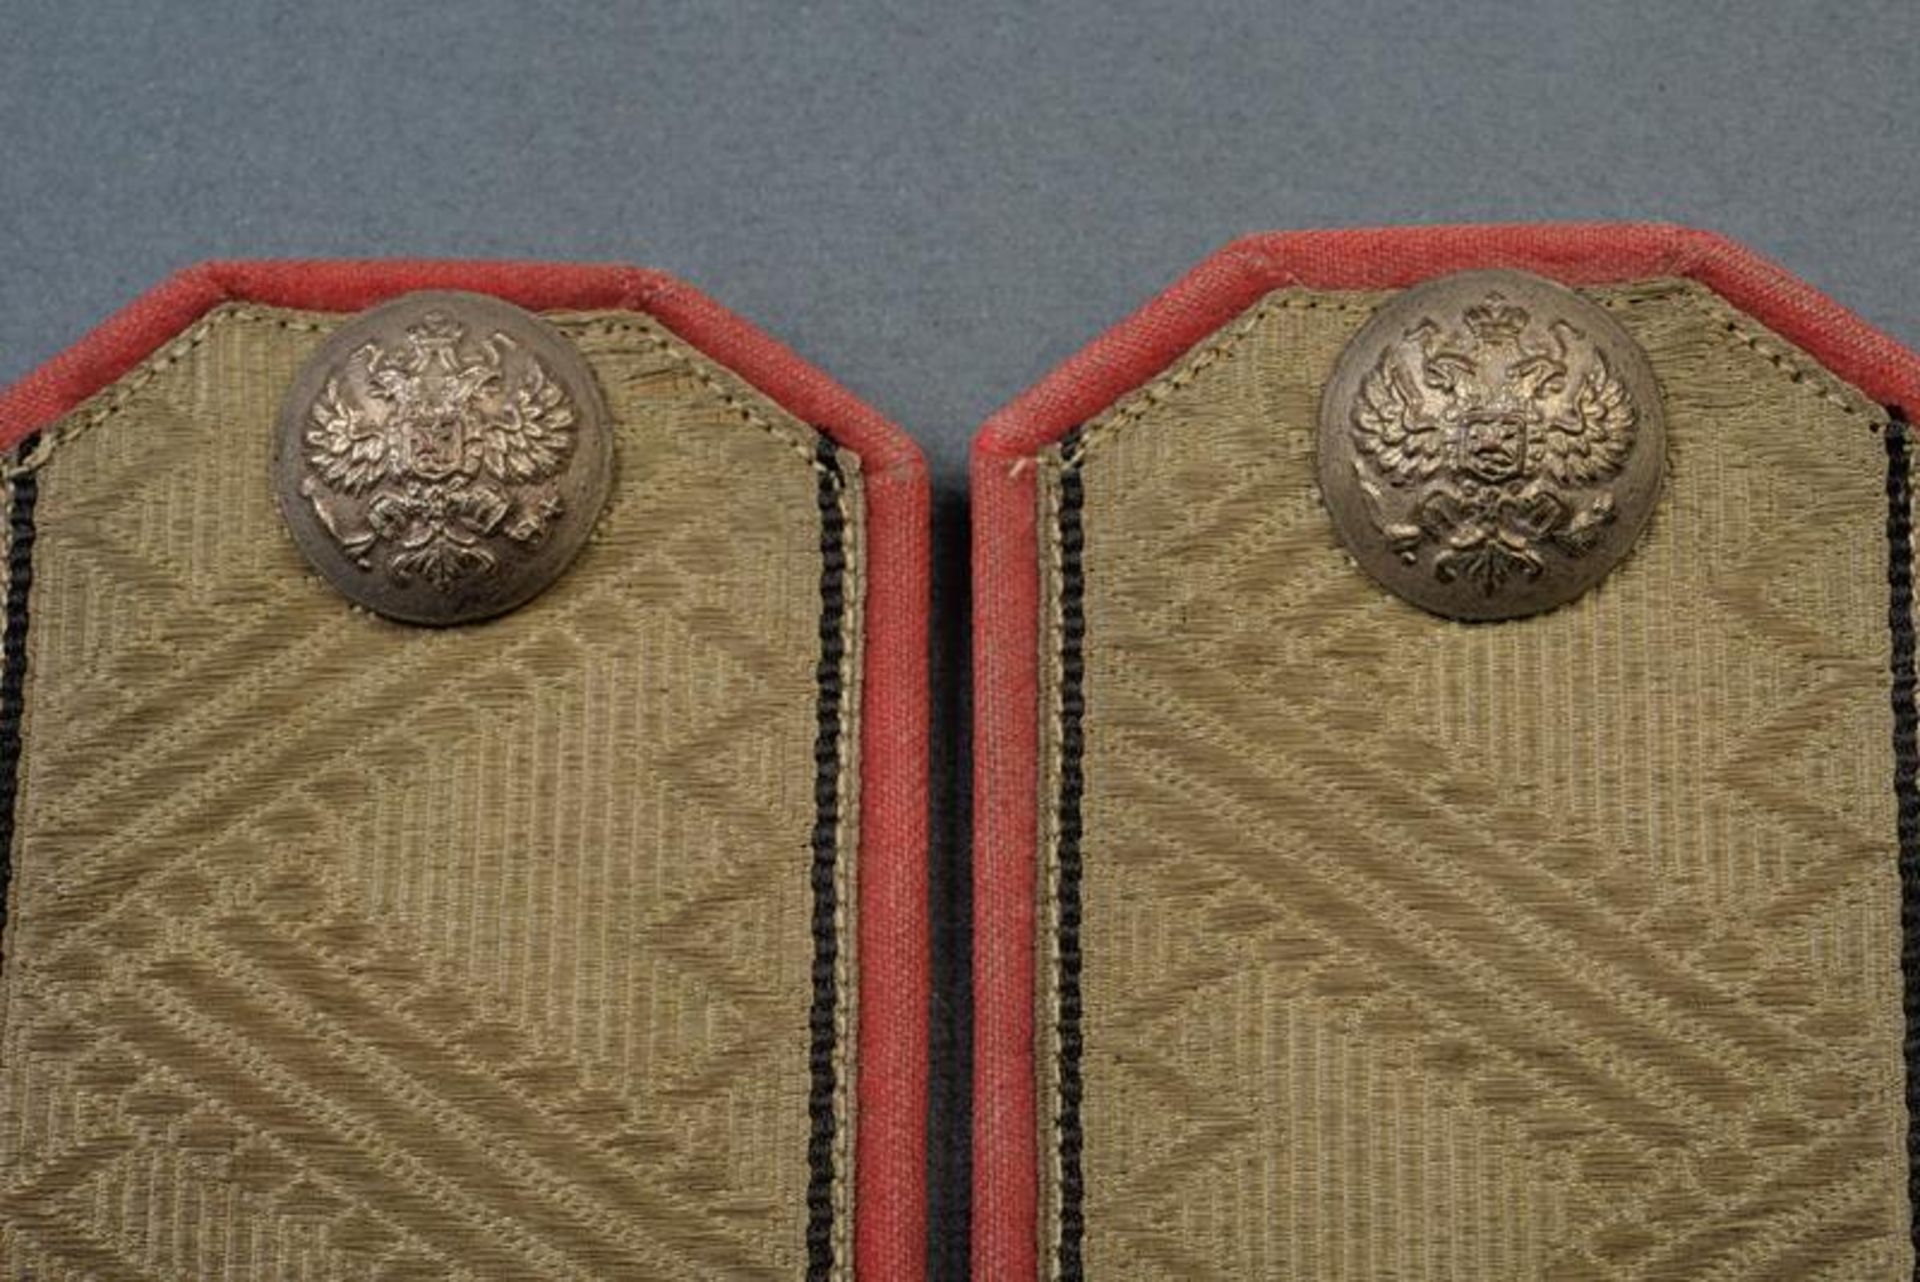 A pair of a civil servant shoulder boards with grad of a general major - Bild 2 aus 3